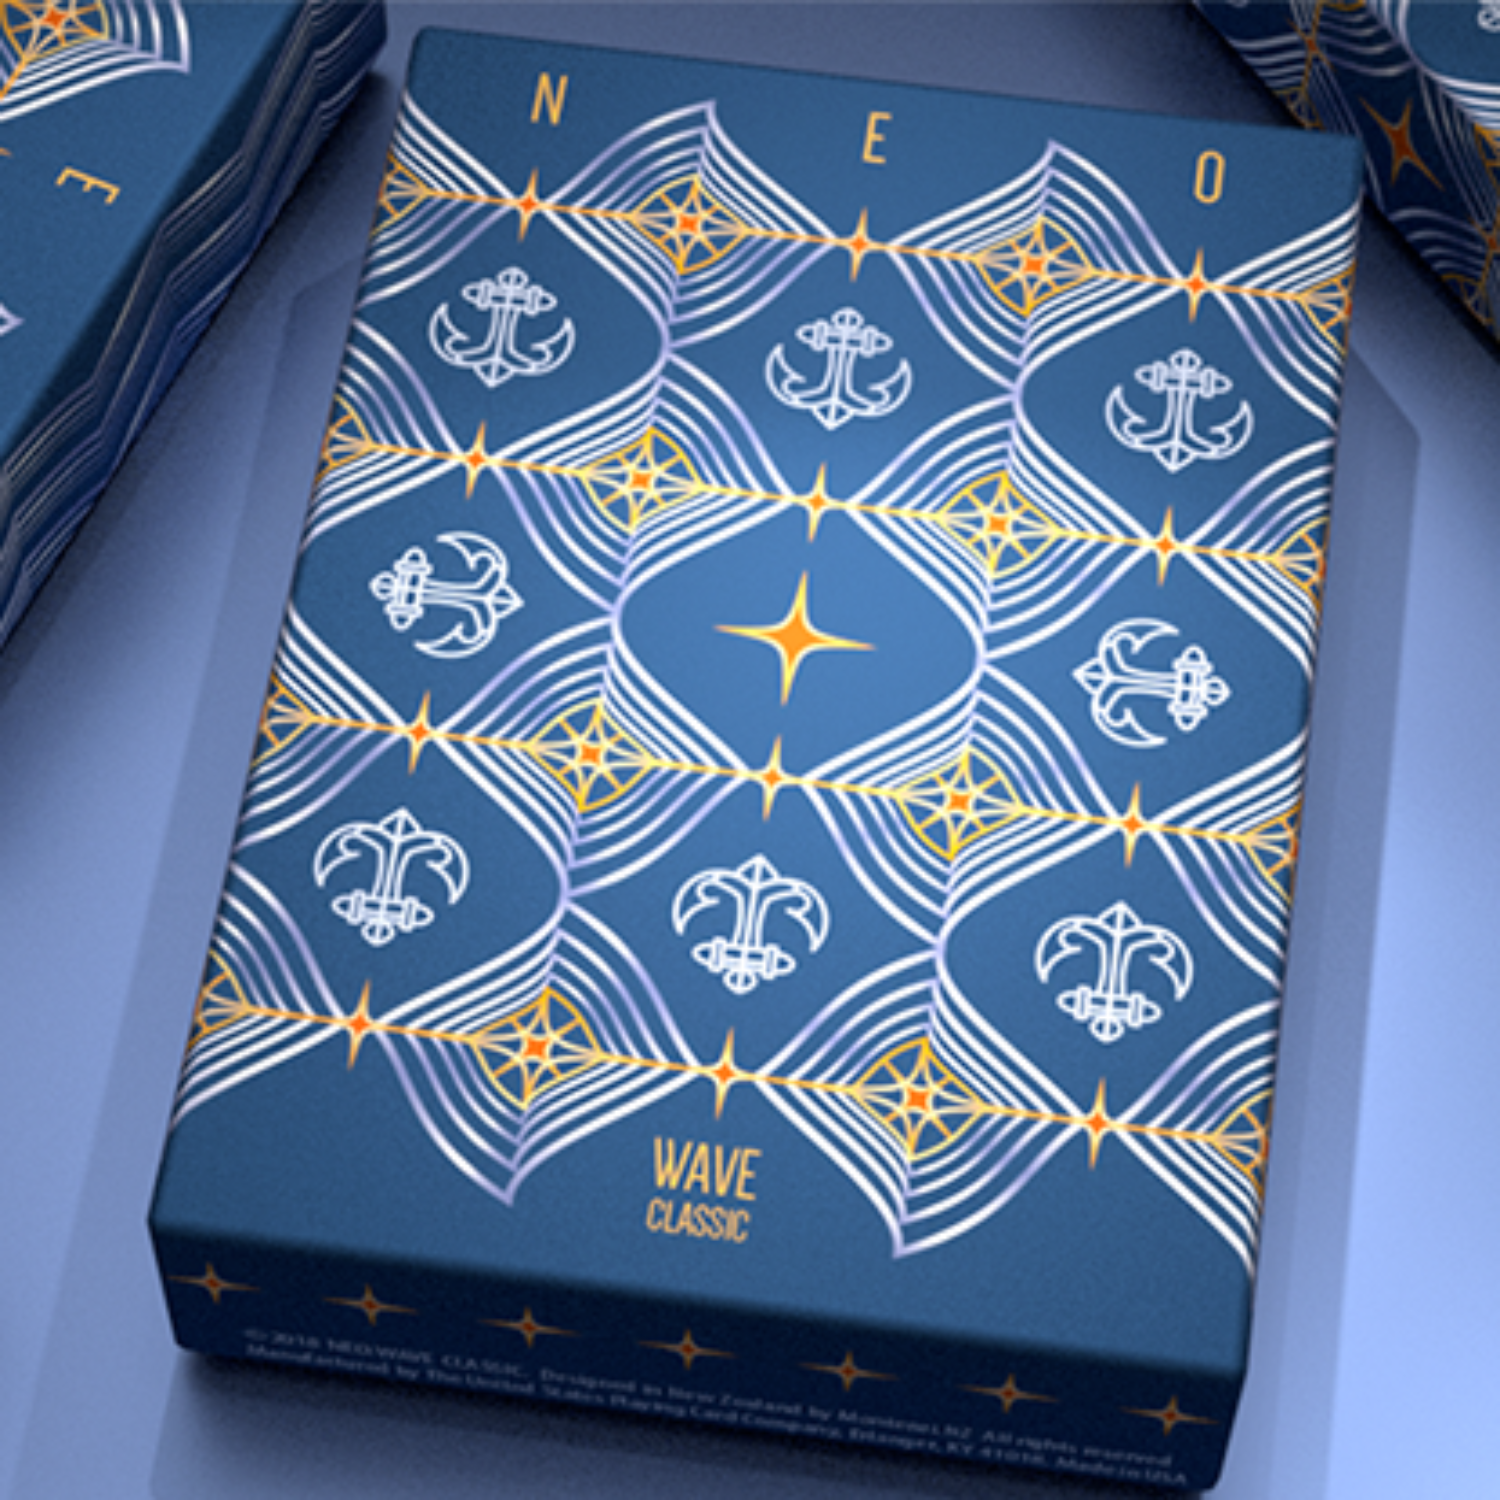 네오웨이브클래식 NEO:WAVE Classic Playing cards